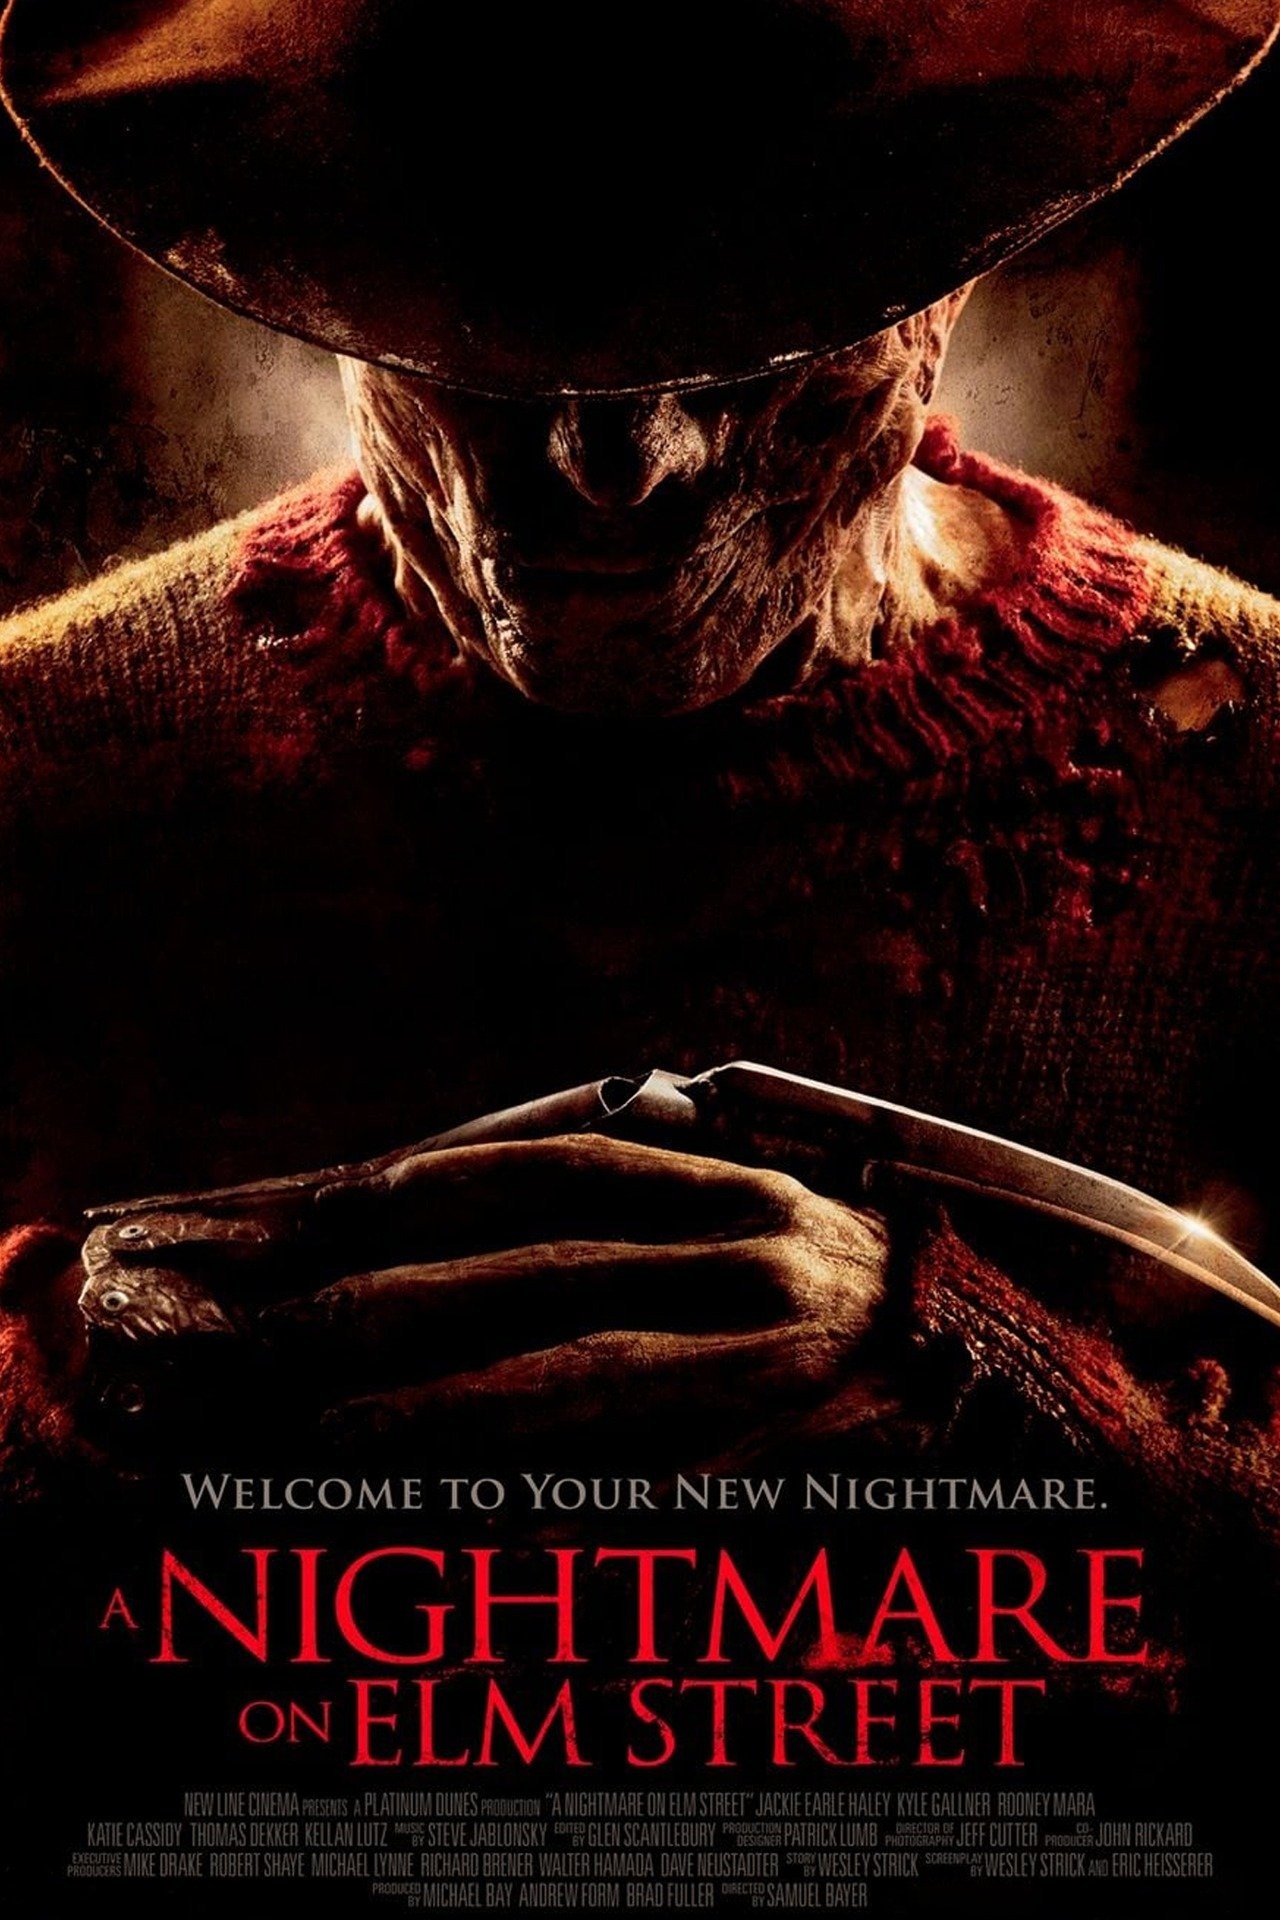 Little Nightmares II (Video Game 2021) - IMDb